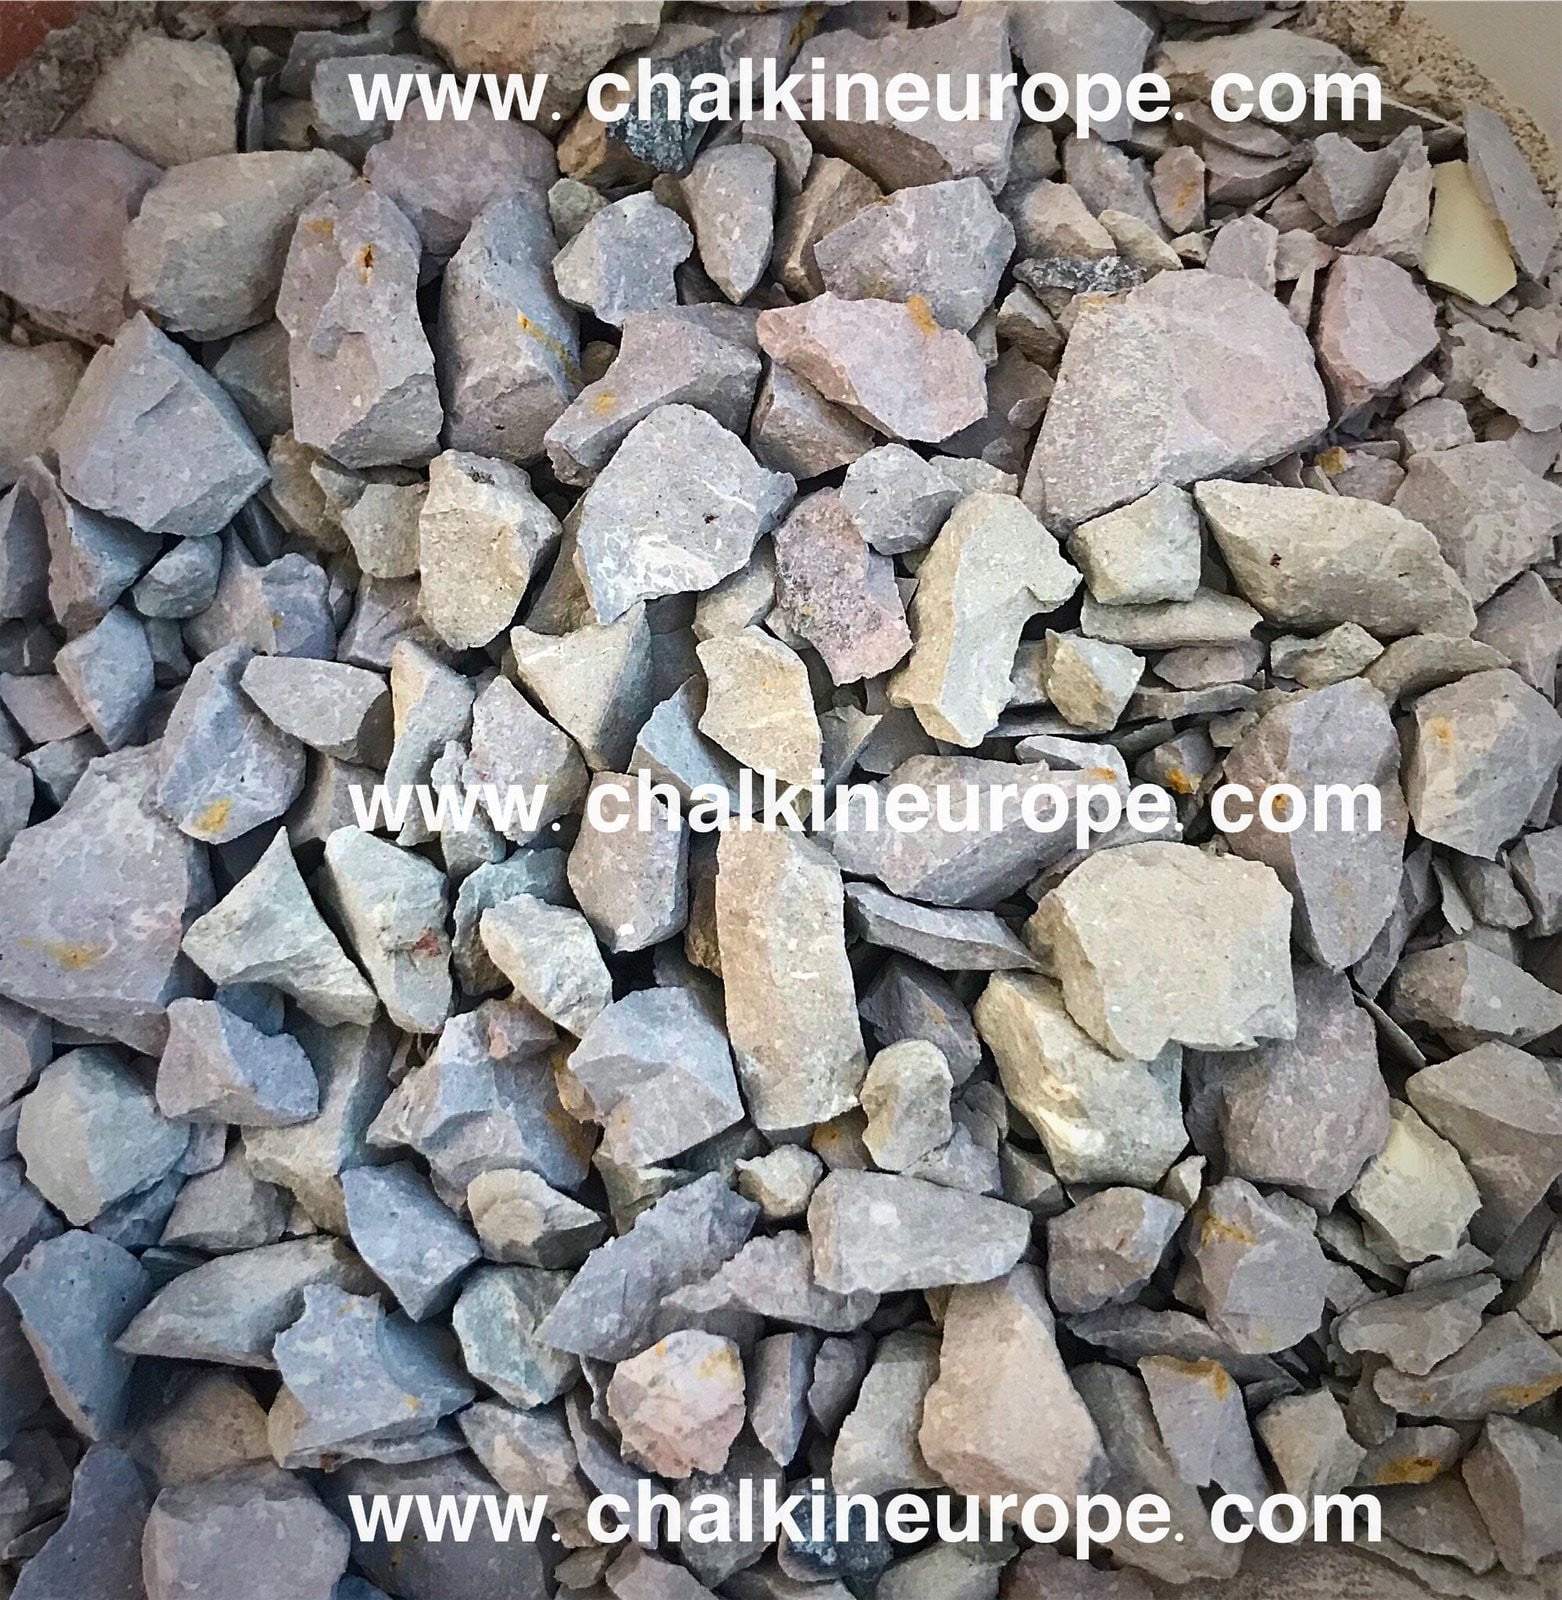 Пълно изпечени глинени хапки Nakumatt - Chalkineurope